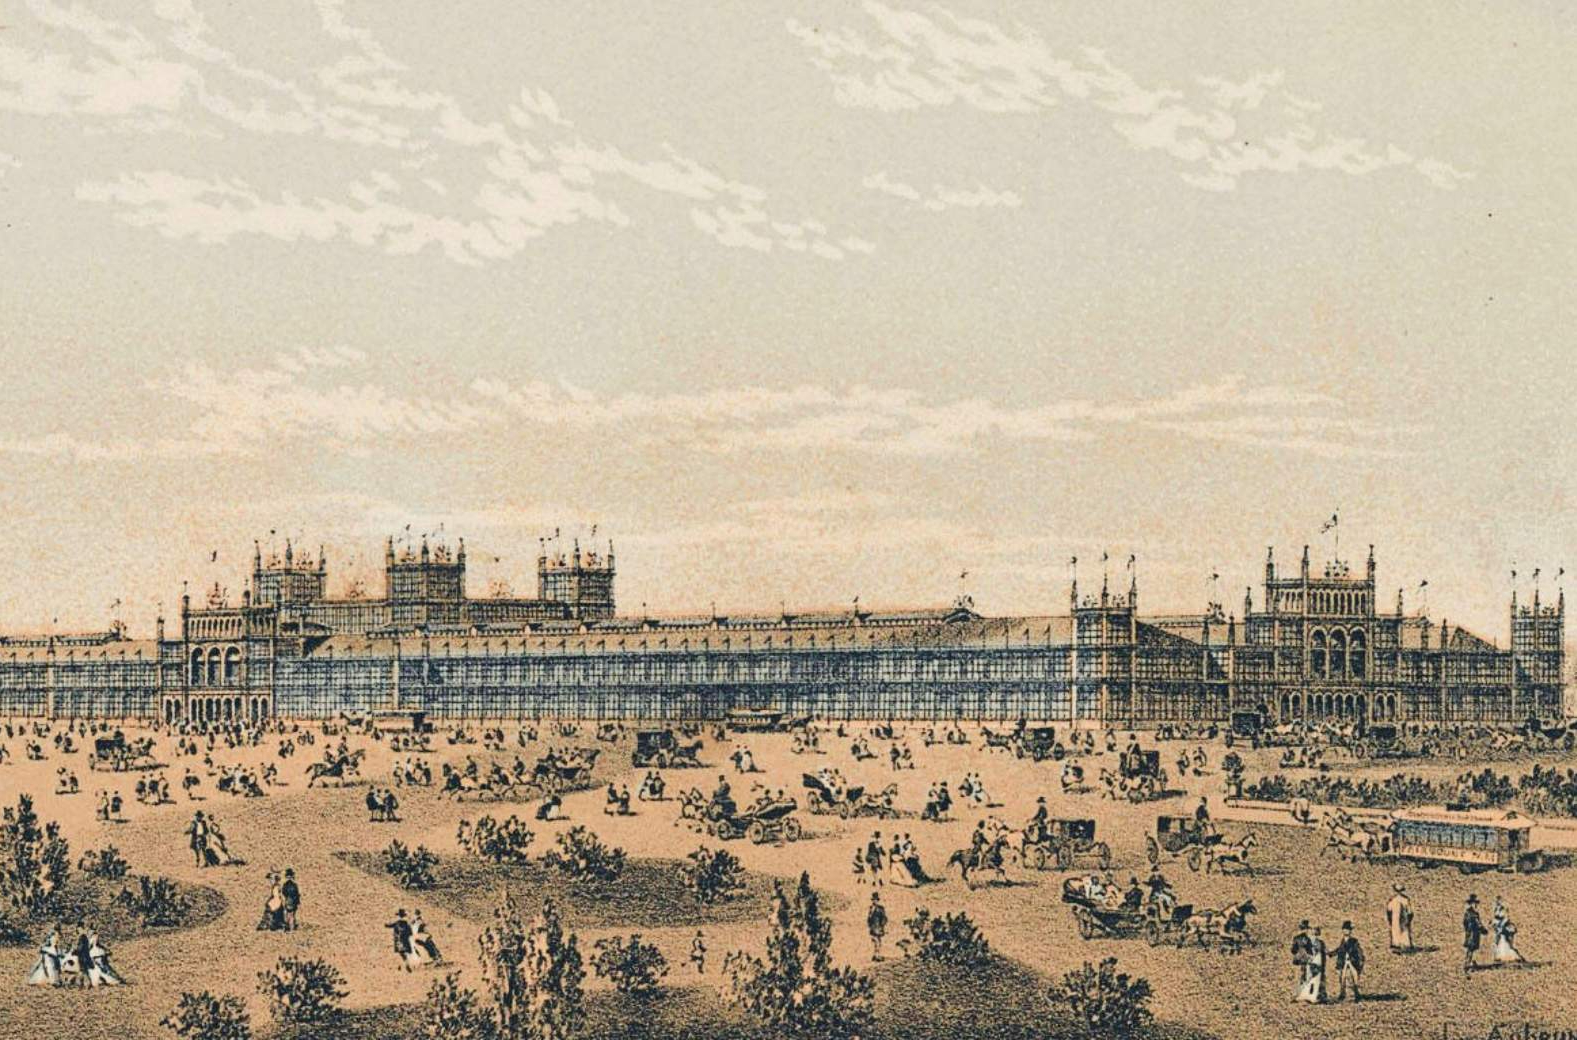 The World's Fair in Philadelphia 1876